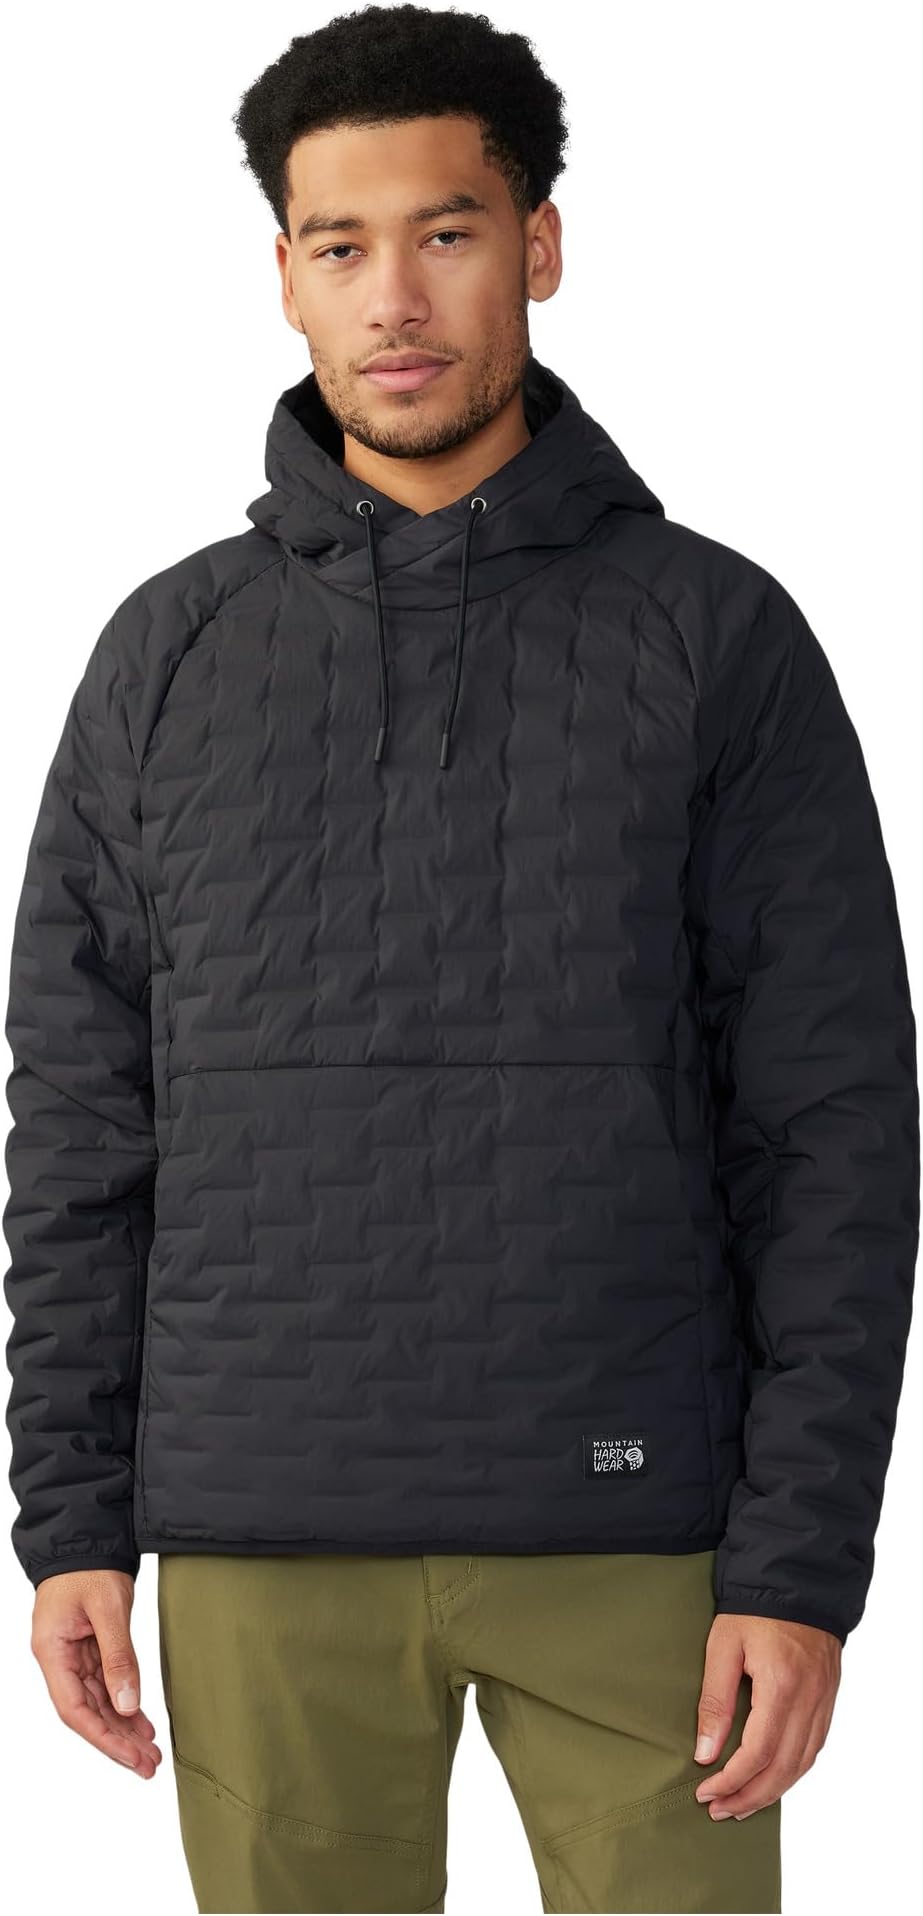 Легкий пуловер с капюшоном Stretchdown Mountain Hardwear, черный